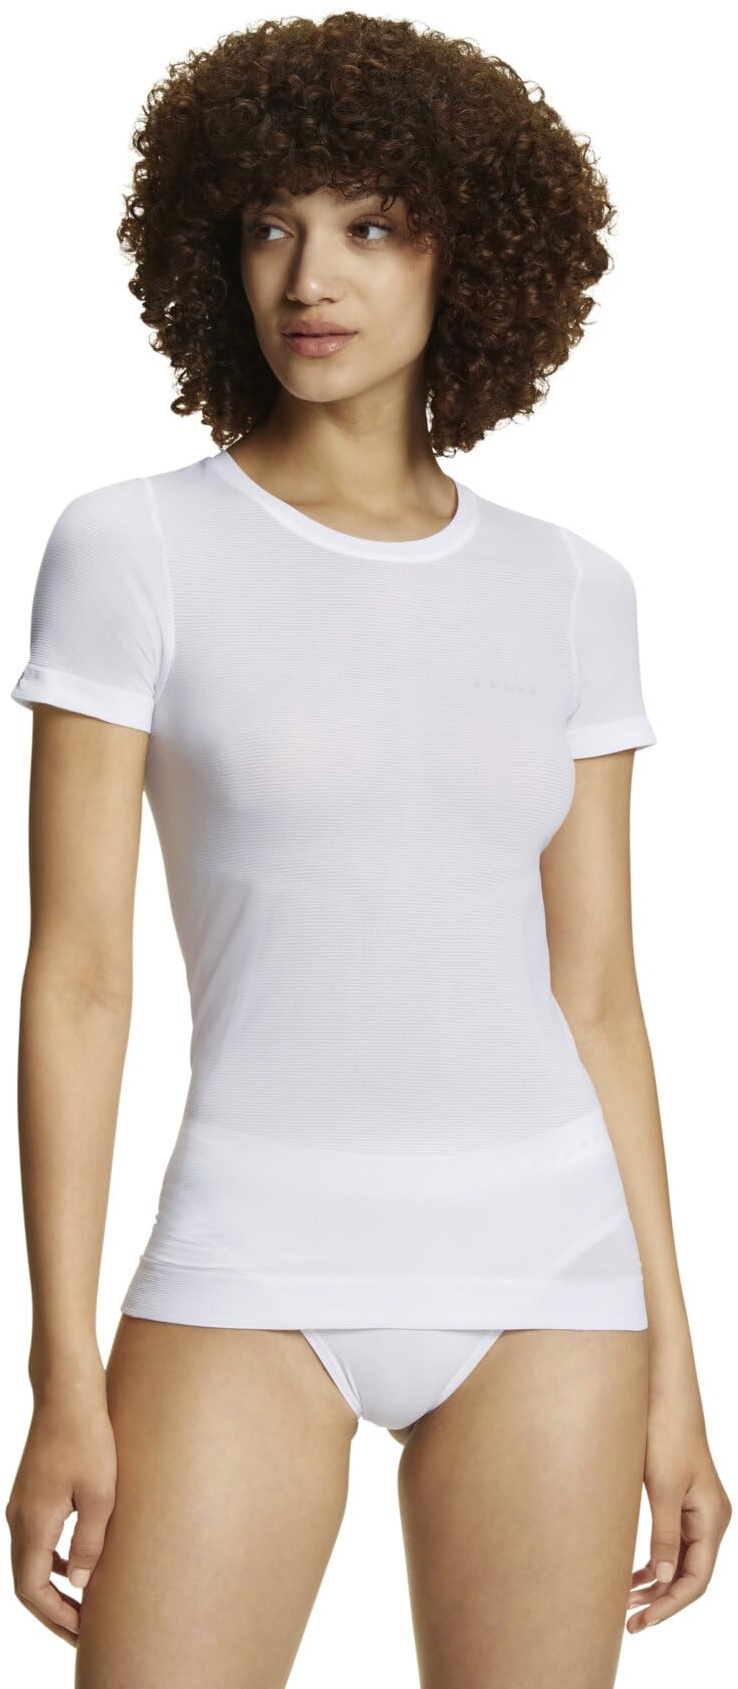 FALKE Damen Baselayer-Shirt Ultralight Cool Round Neck W S/S SH Funktionsmaterial Schnelltrocknend 1 Stück, Weiß (White 2860), M